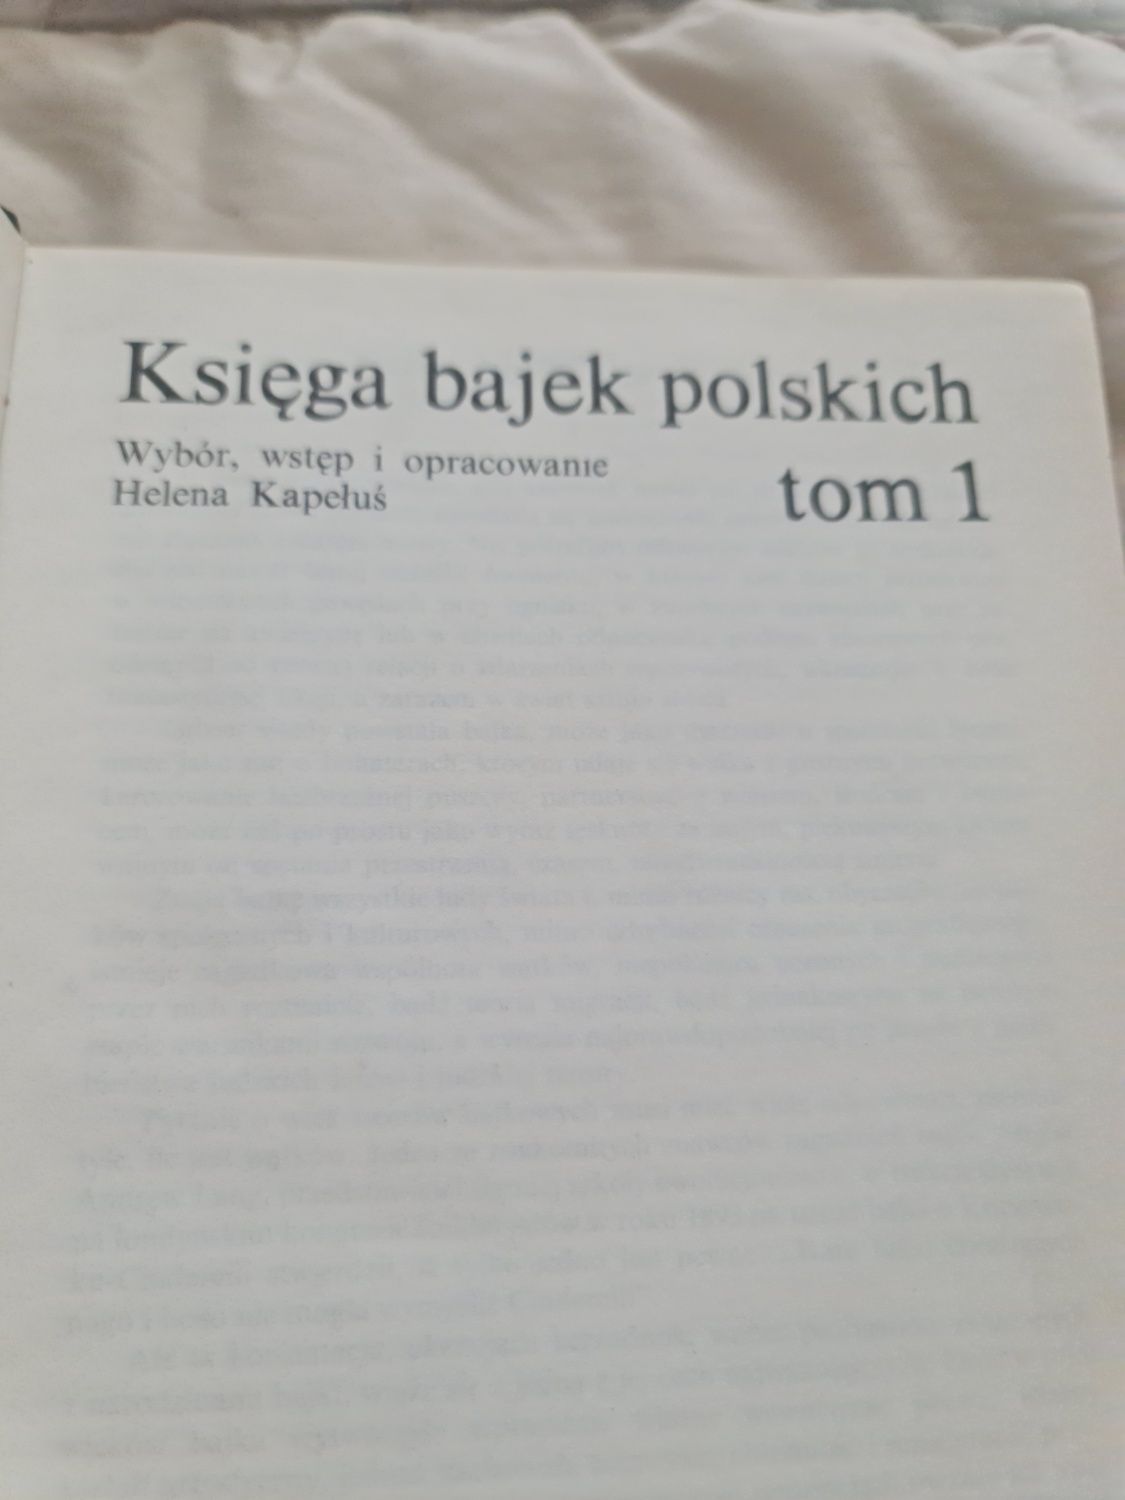 Księga bajek polskich